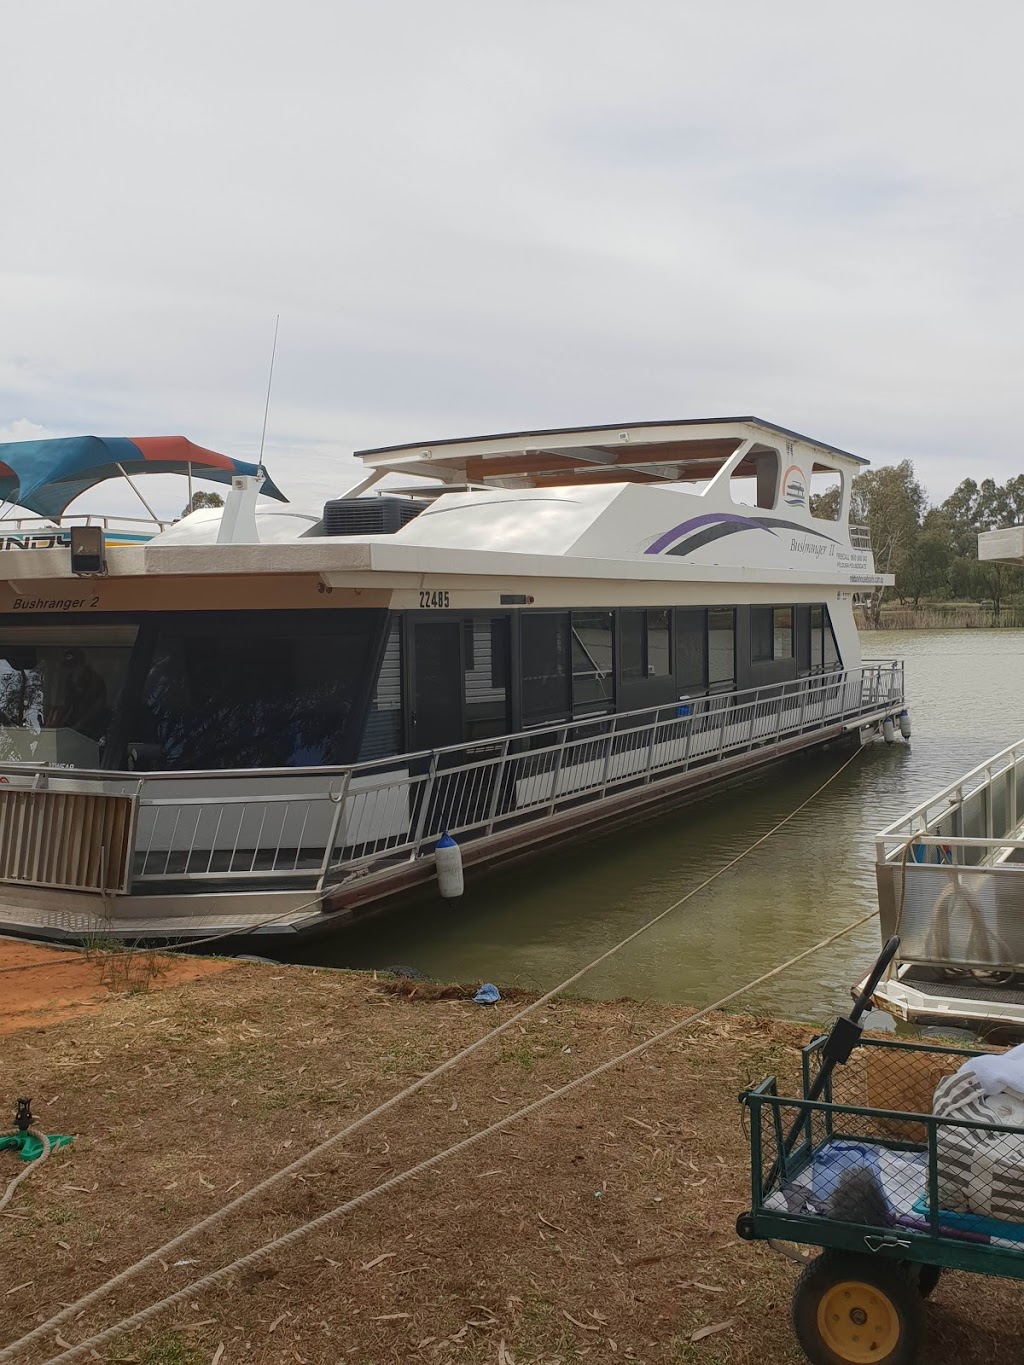 Mildura Houseboats | lodging | 91-125 Etiwanda Ave, Mildura VIC 3502, Australia | 1800800842 OR +61 1800 800 842